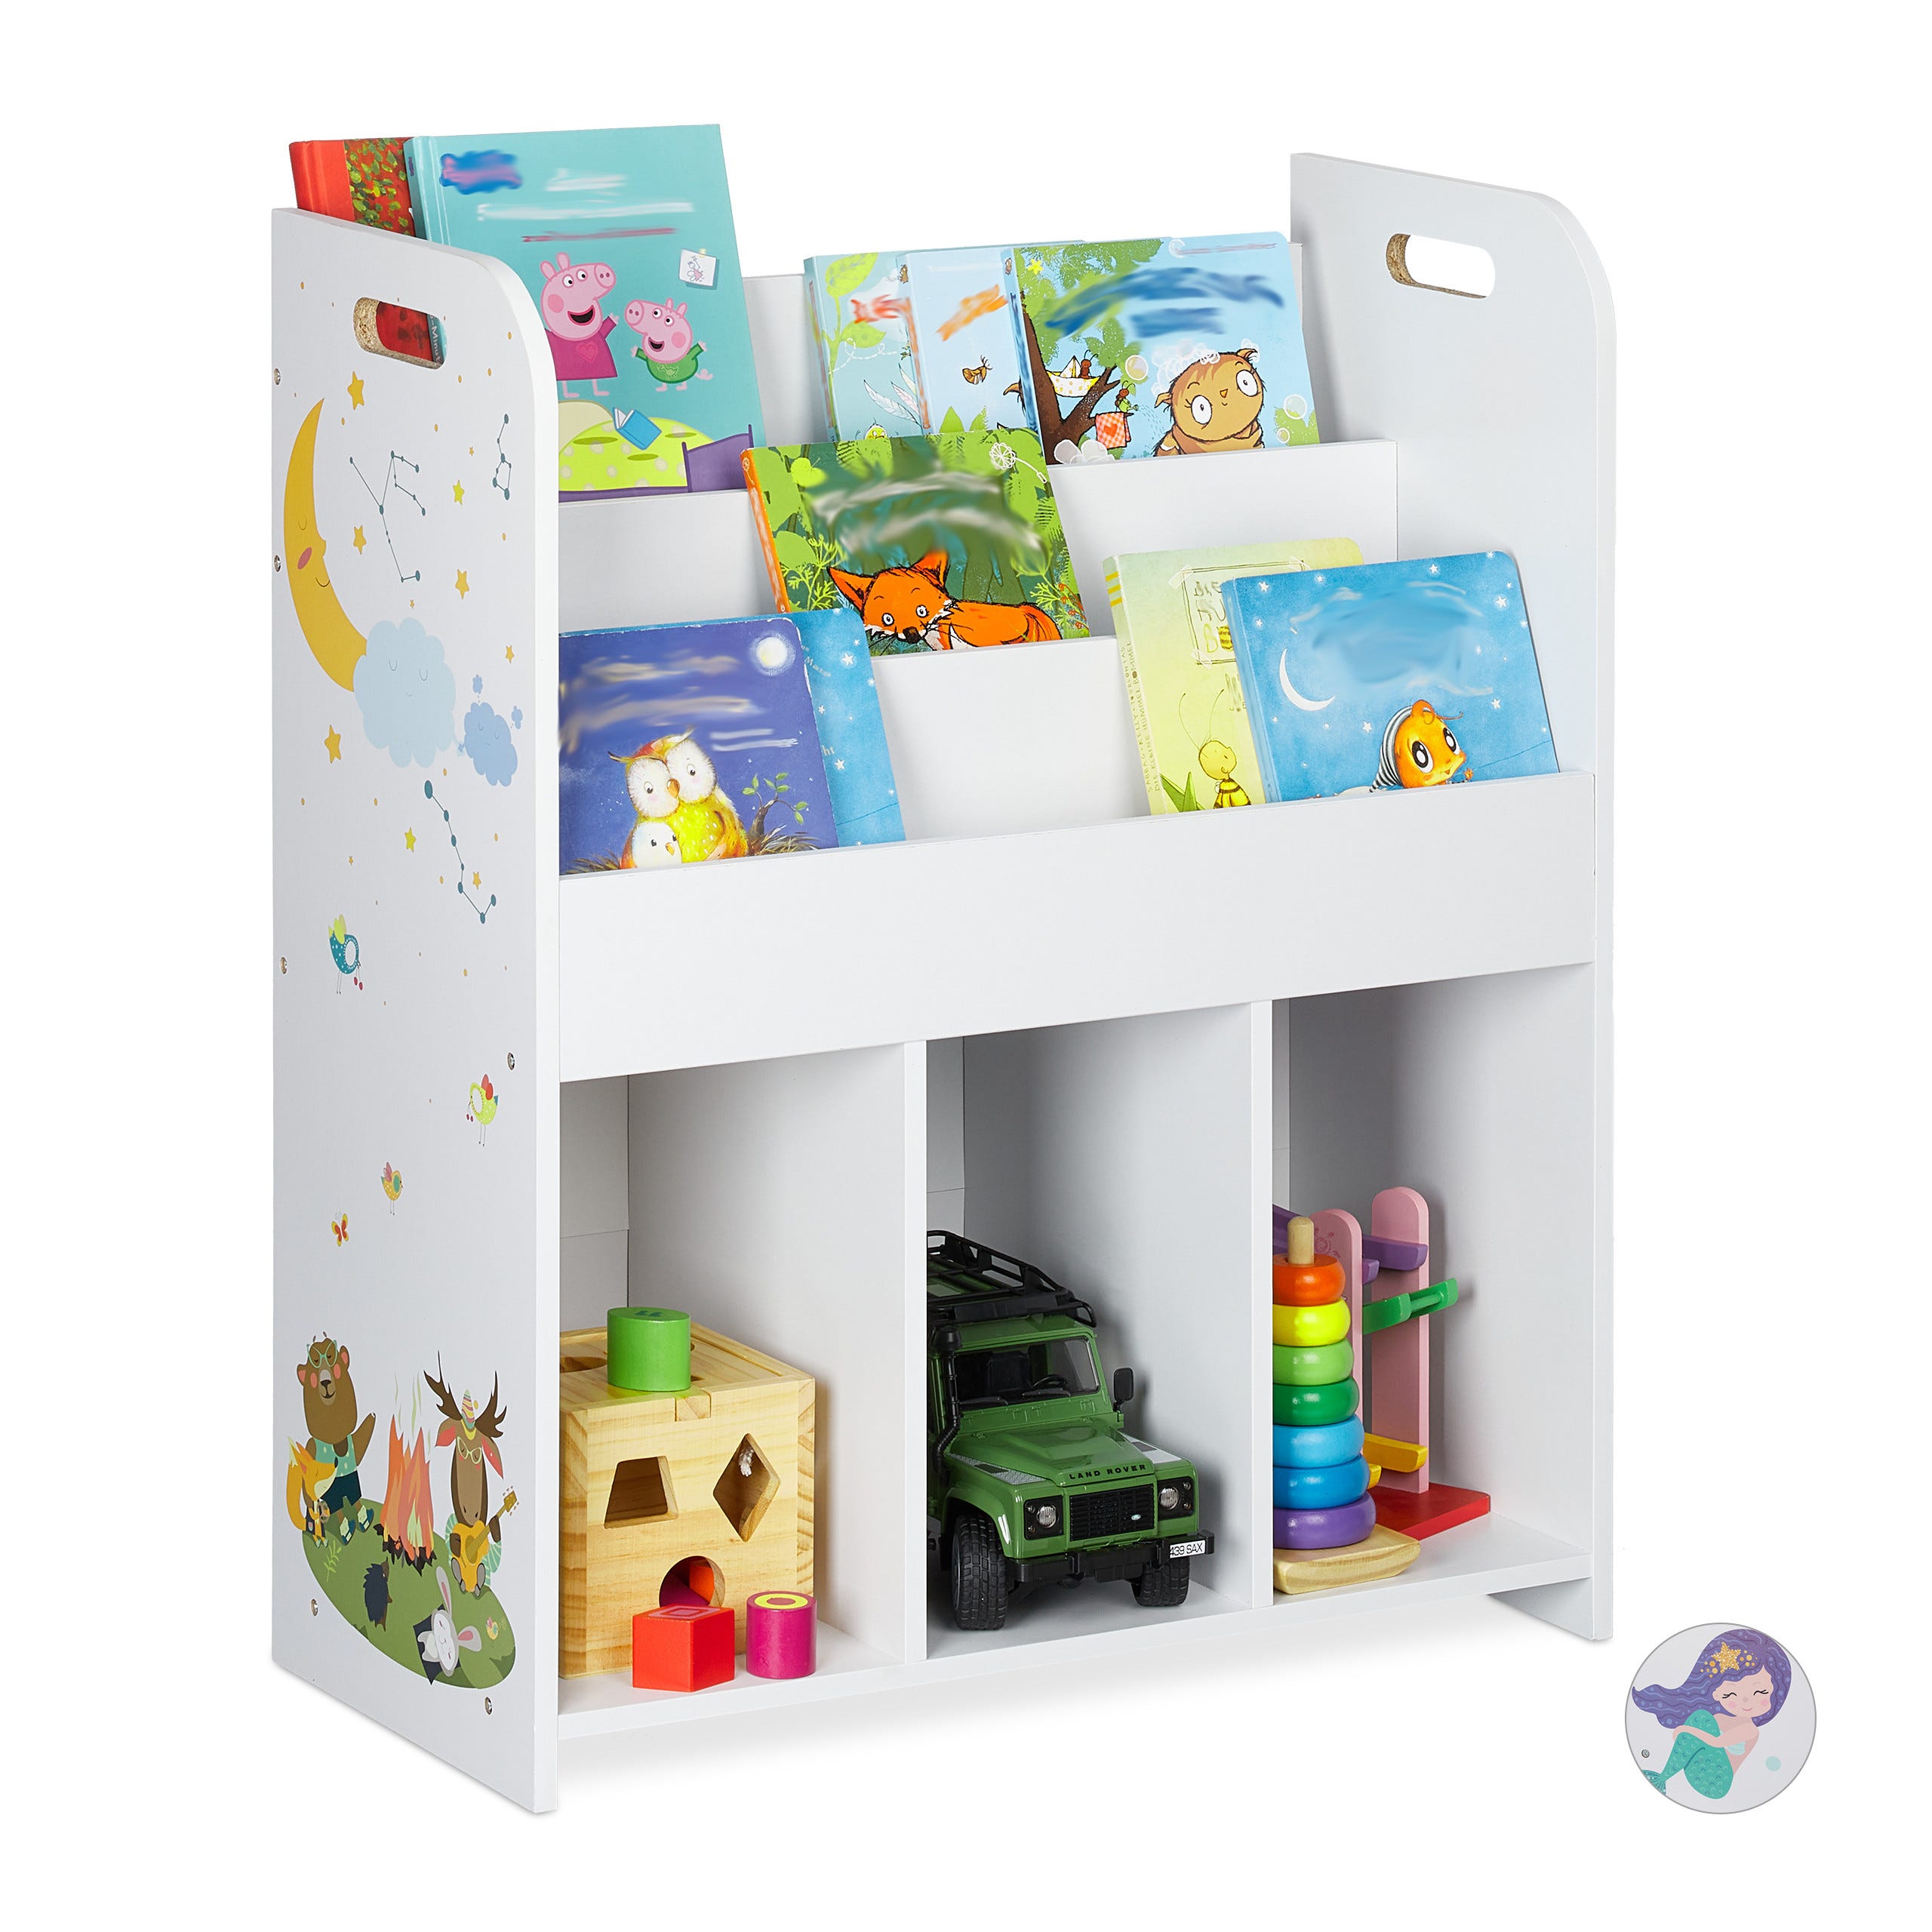 Relaxdays 10022747_59 Scaffale per Bambini con Box Porta-Giochi, Contenitori  Colorati per Giocattoli, MDF+Plastica, 68x86x31 cm